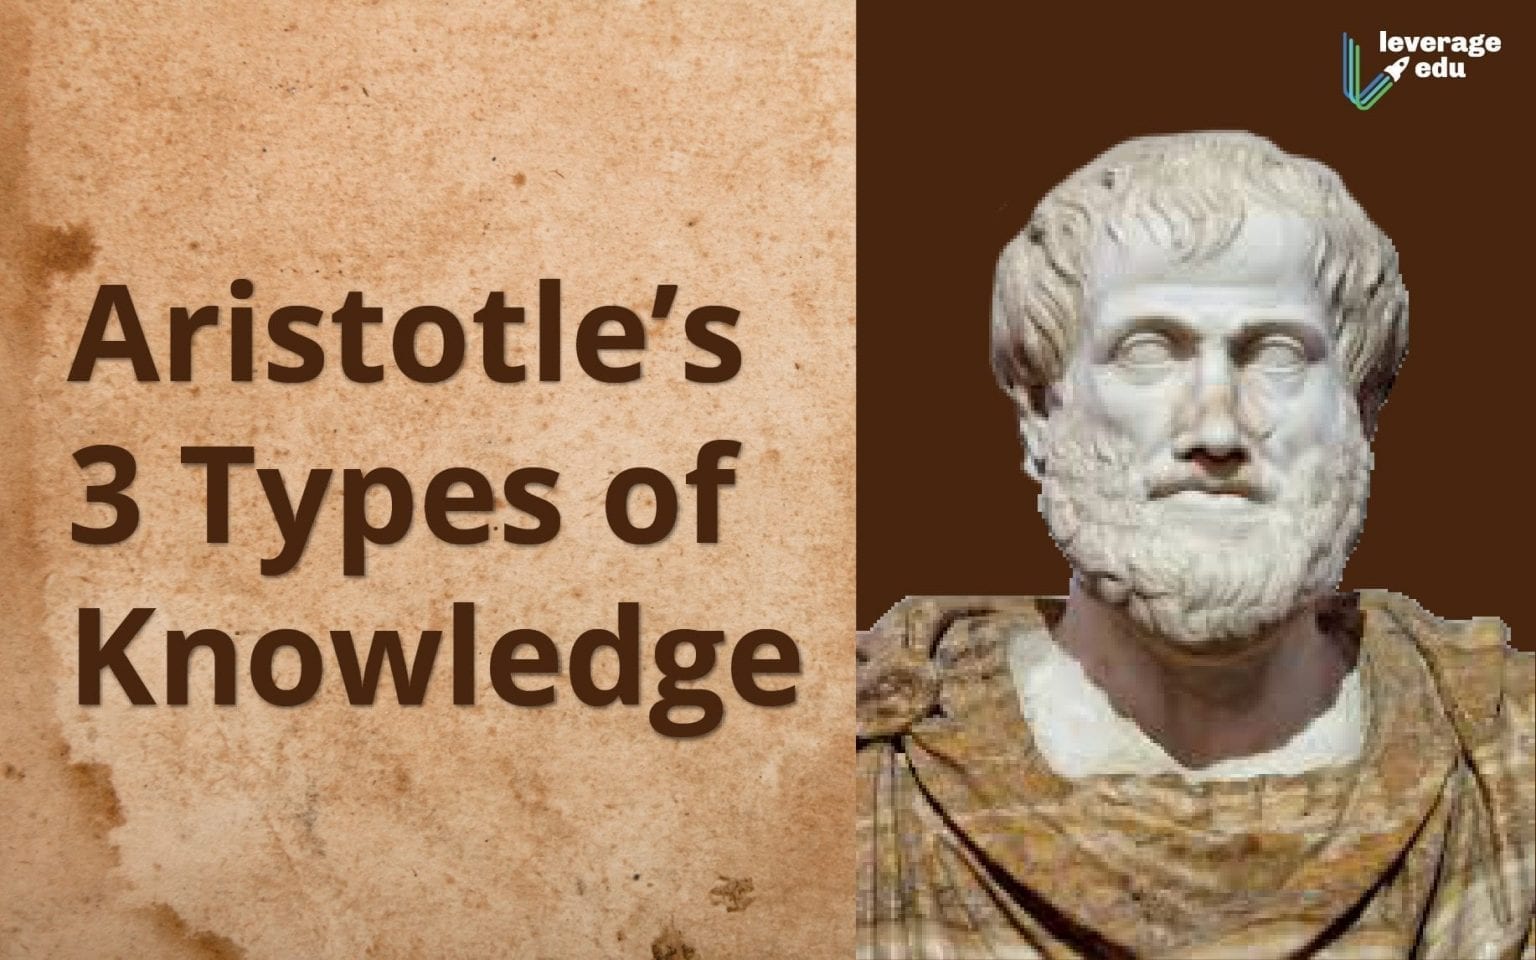 aristotle summary of philosophy